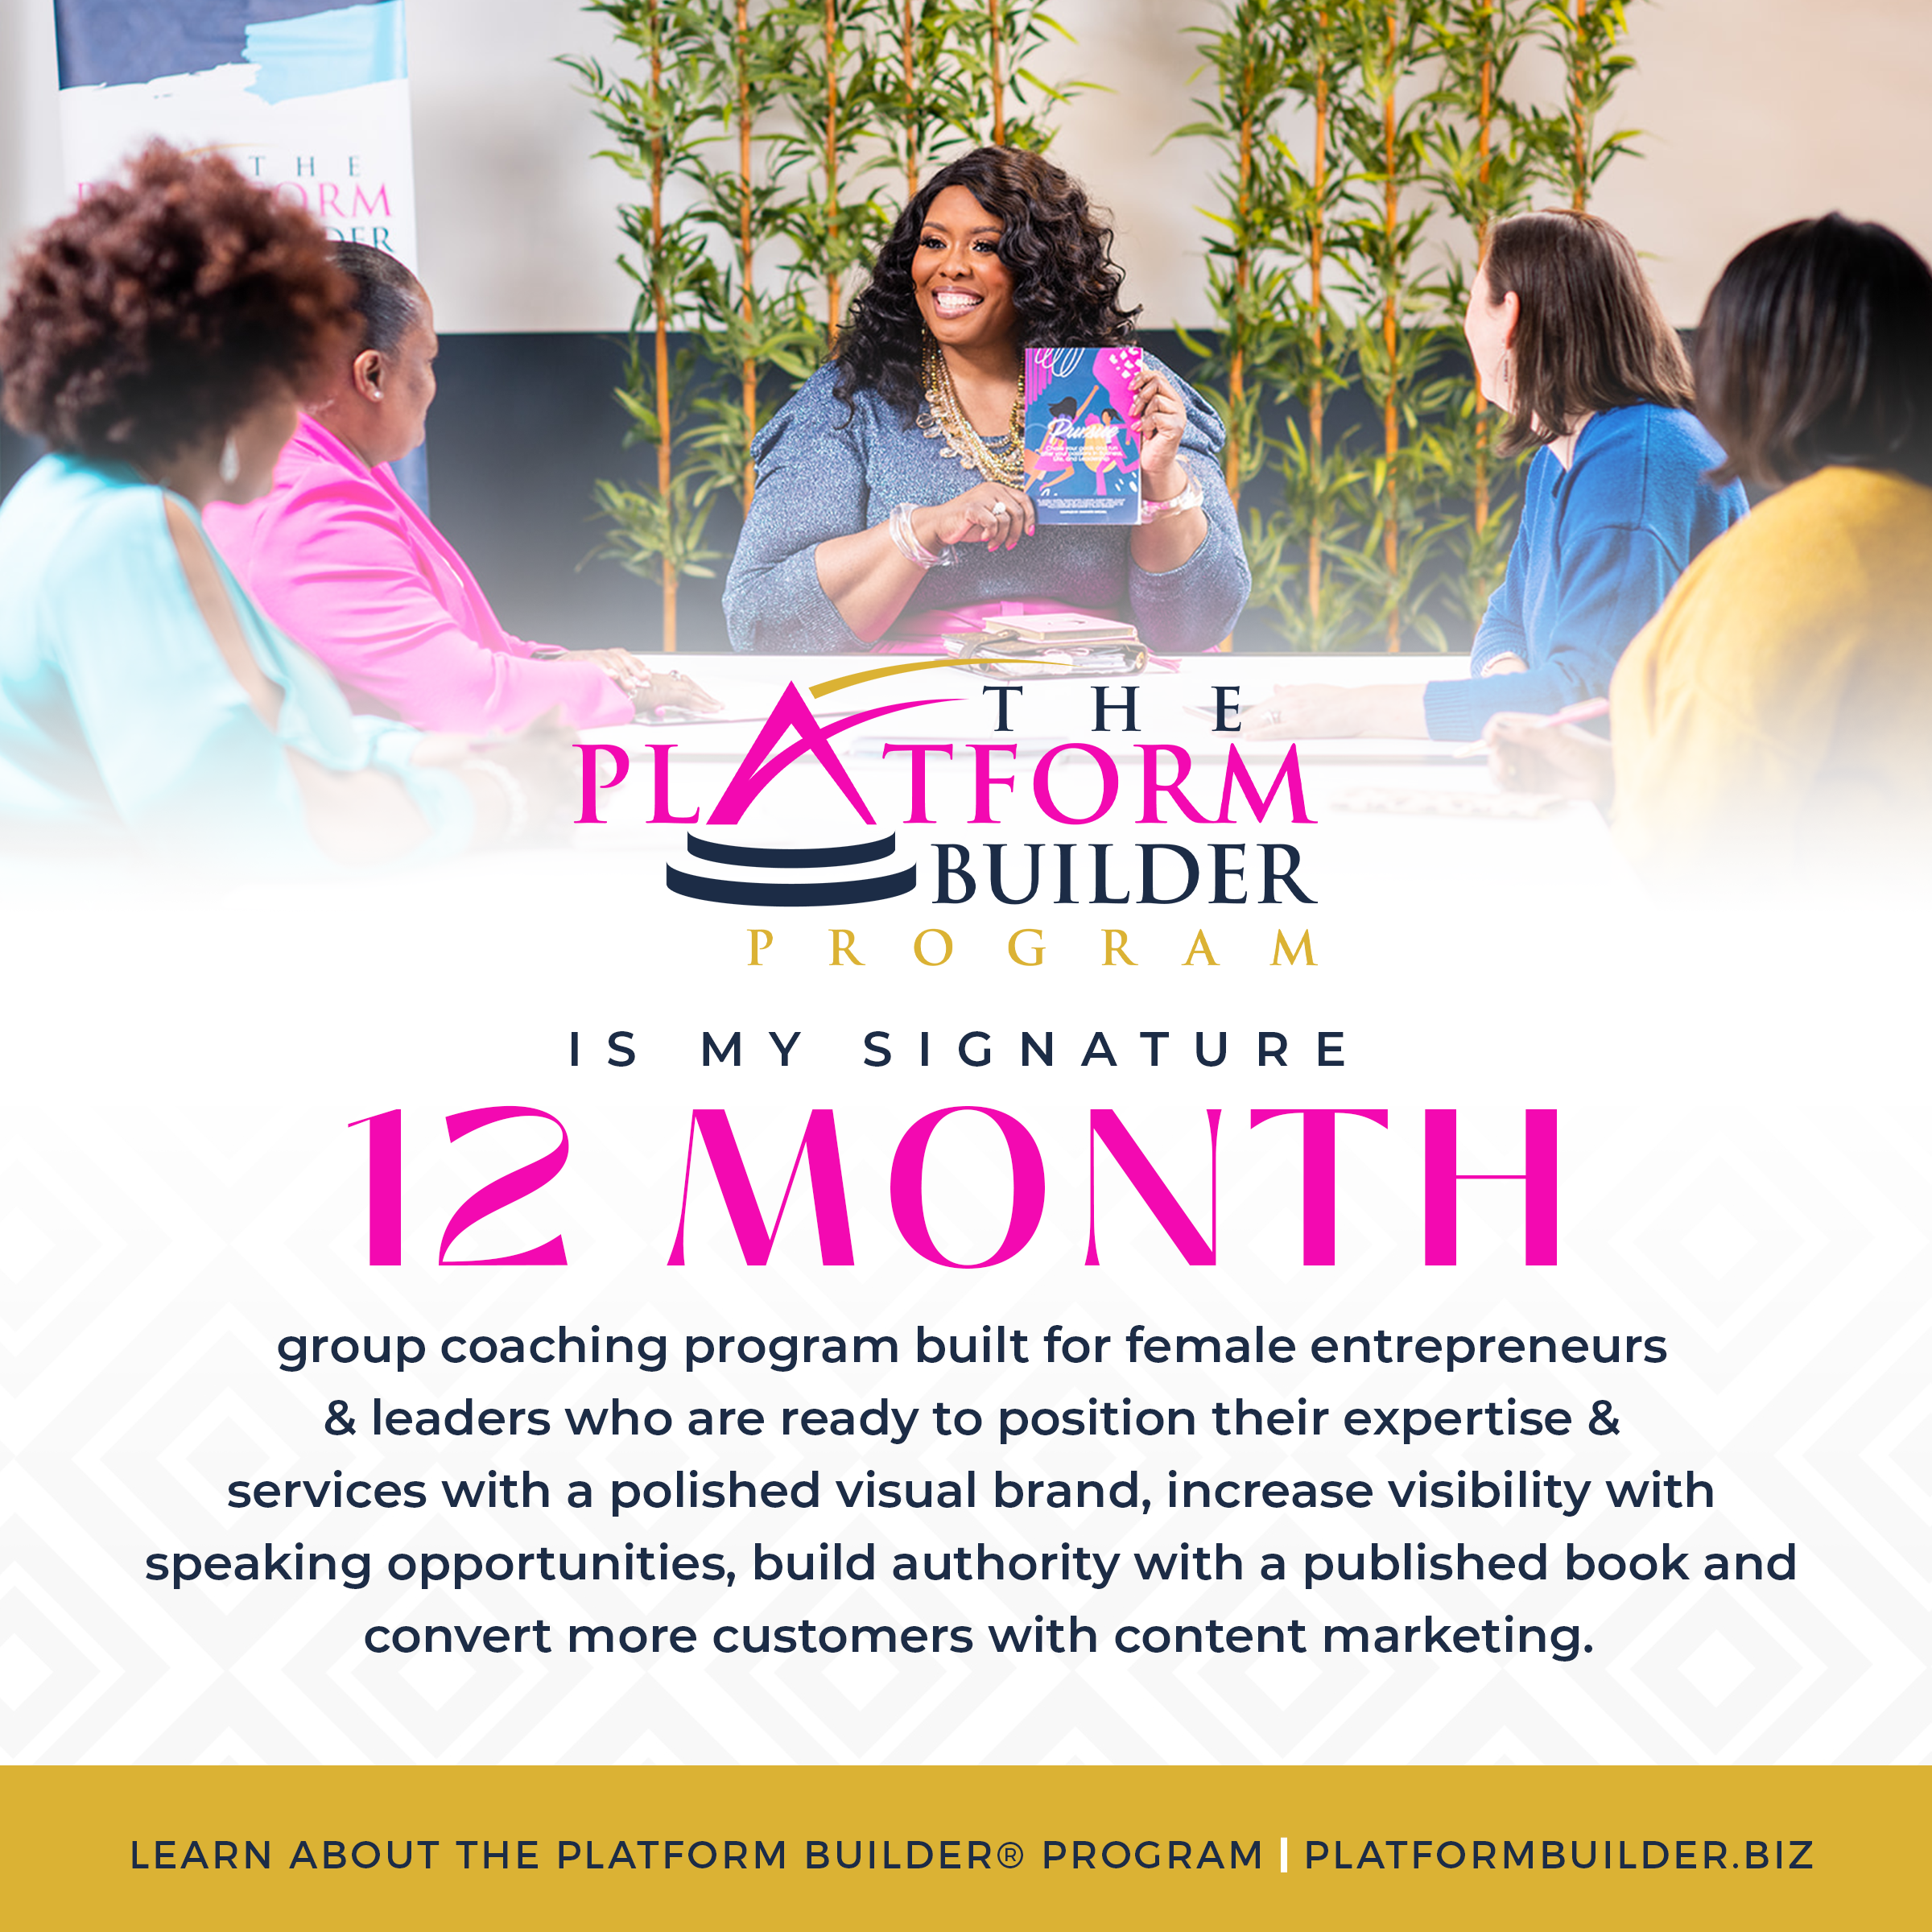 The Platform Builder Program